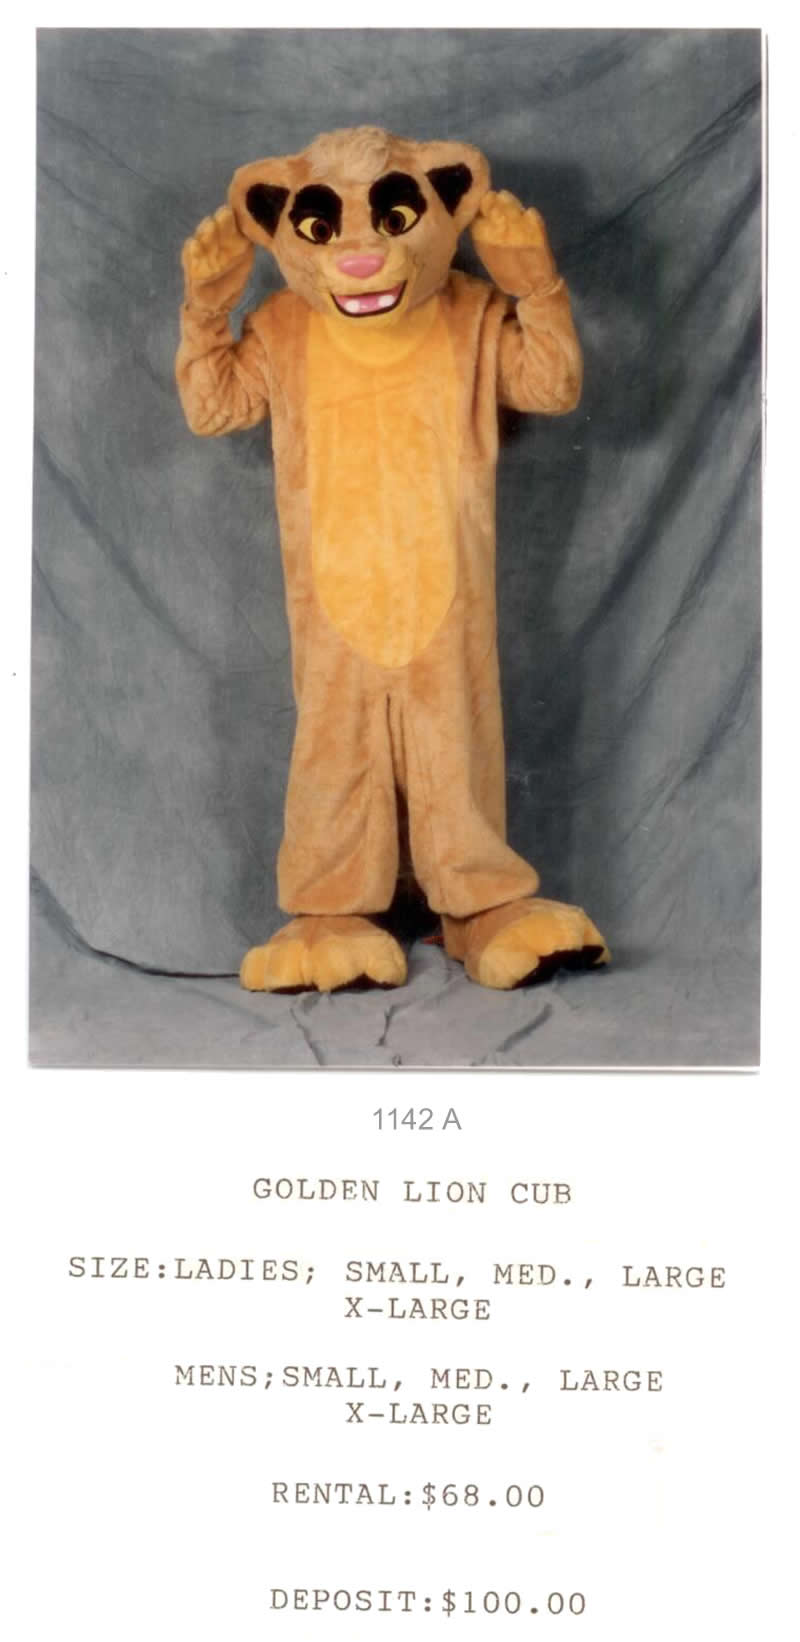 GOLDEN LION CUB